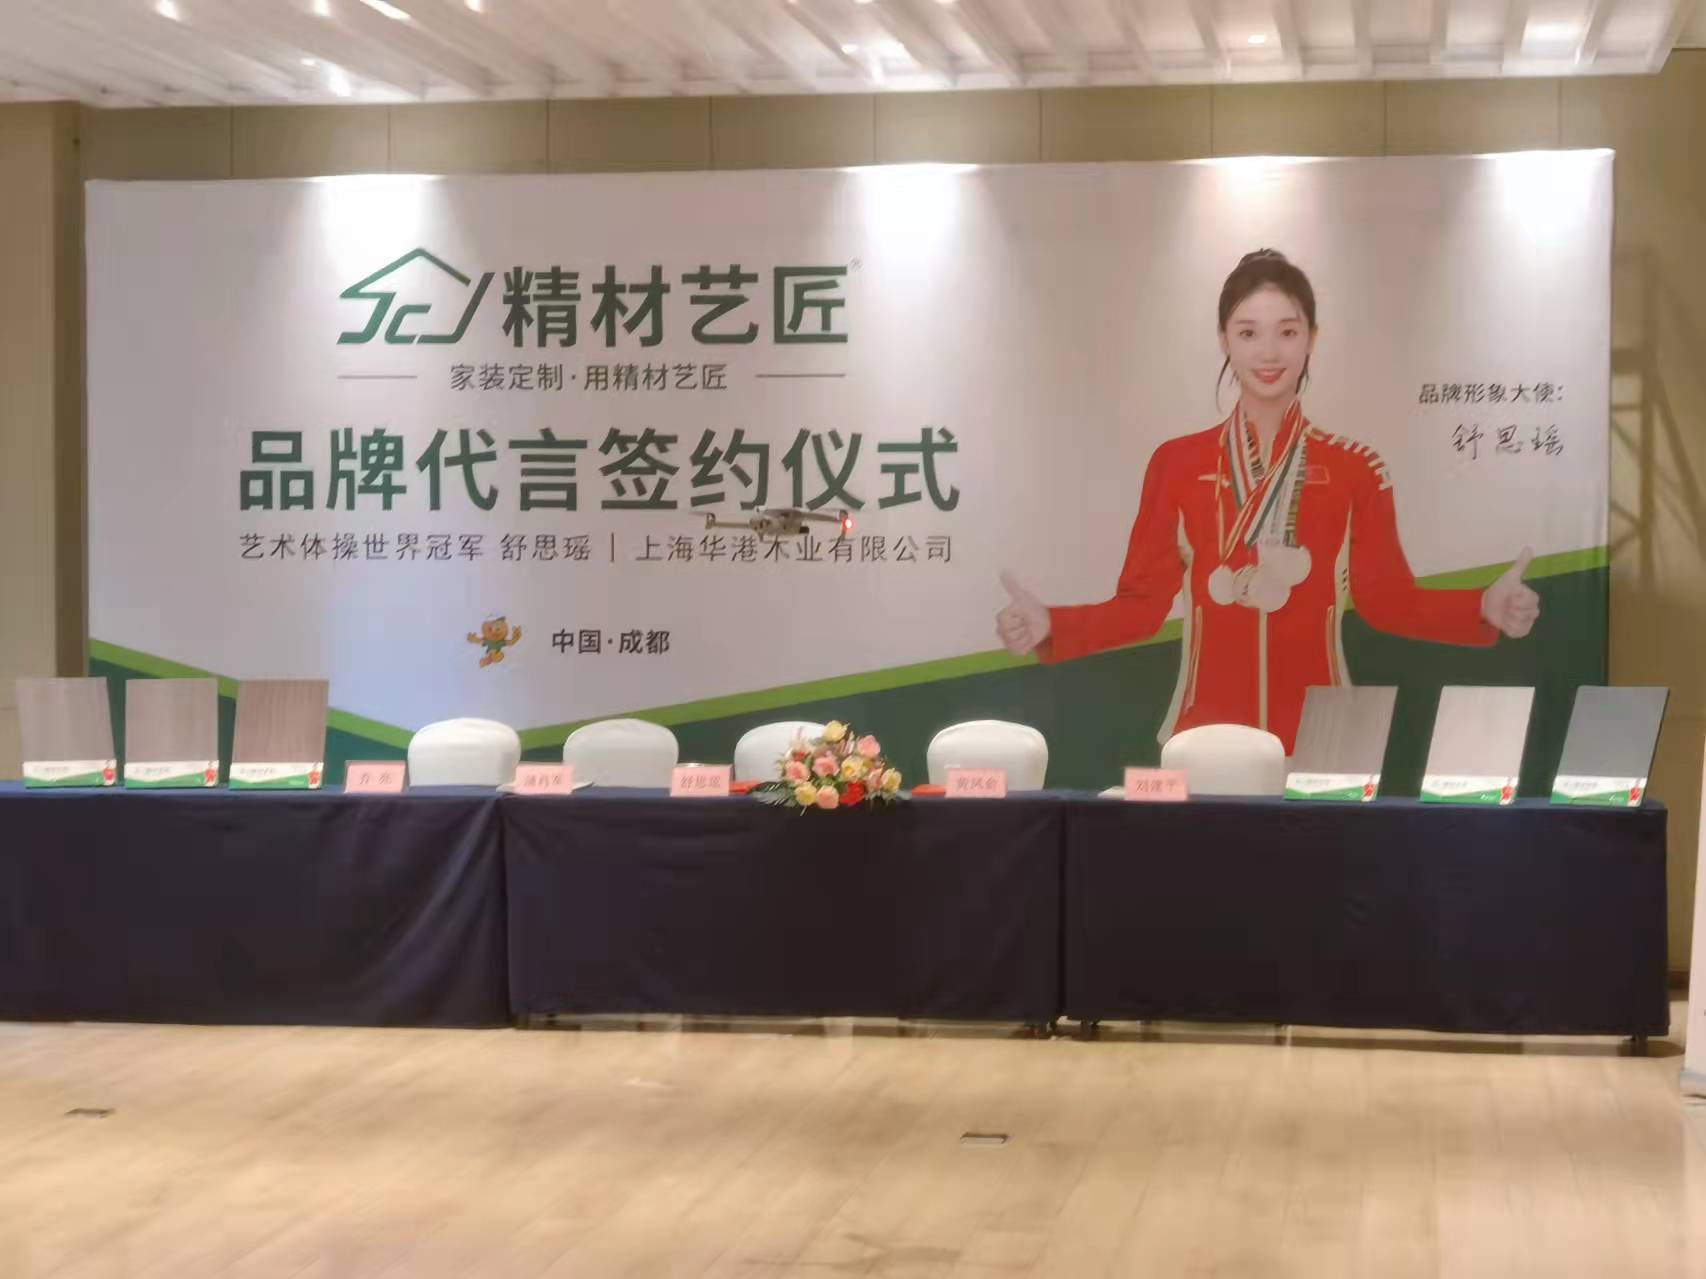 祝贺中国板材十大品牌精材艺匠签约艺术体操冠军舒思瑶为品牌代言人